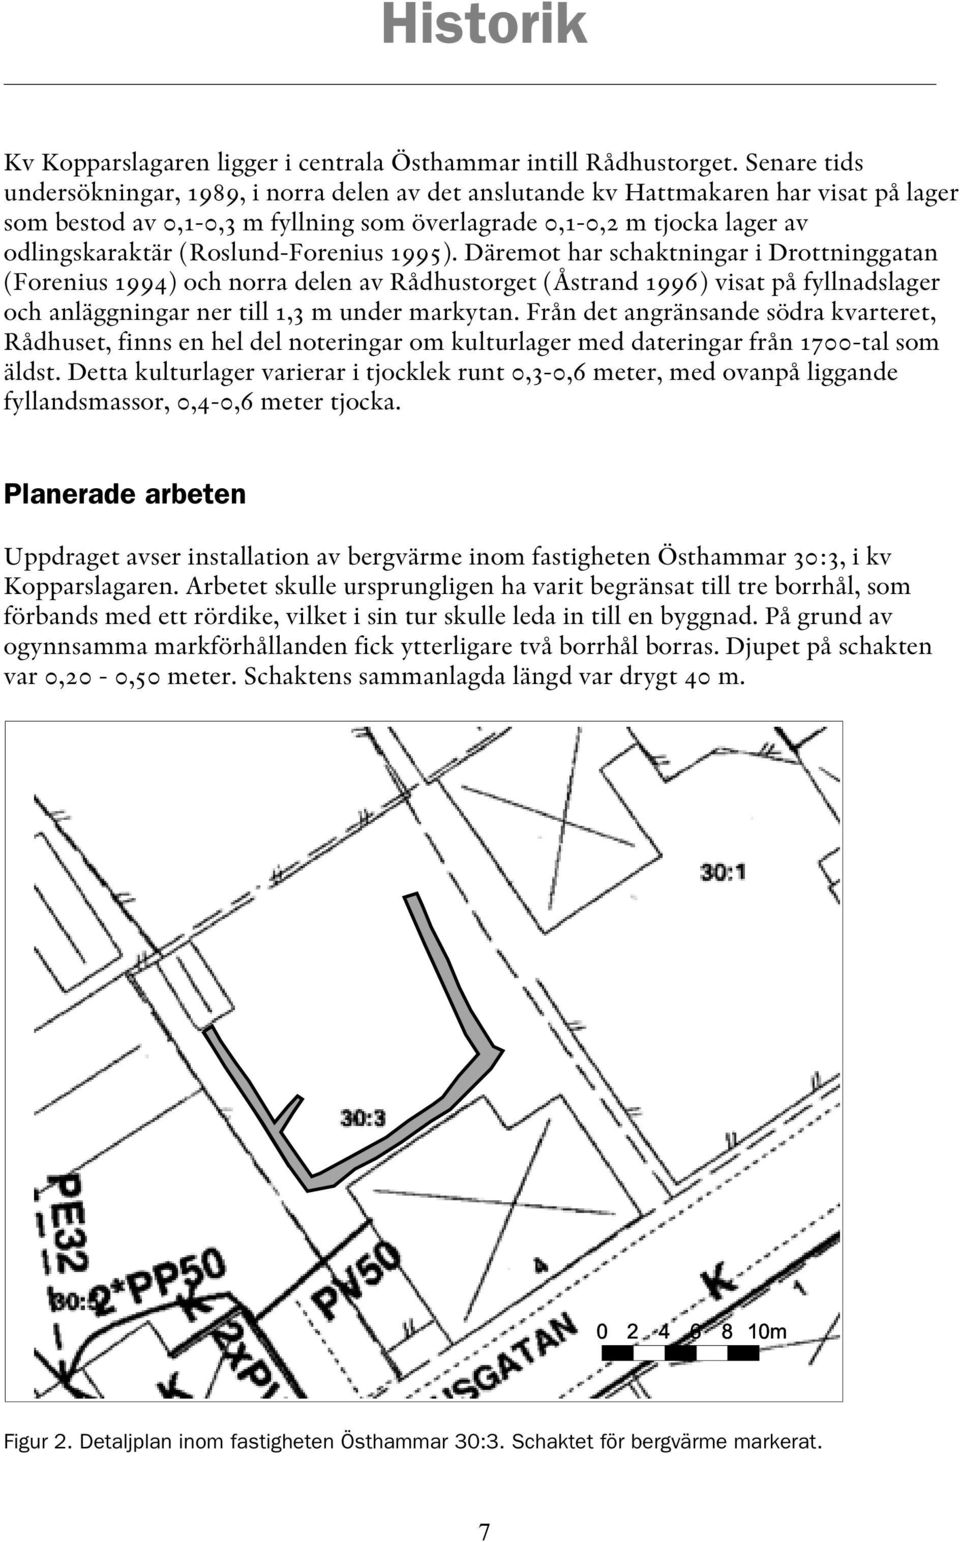 (Roslund-Forenius 1995). Däremot har schaktningar i Drottninggatan (Forenius 1994) och norra delen av Rådhustorget (Åstrand 1996) visat på fyllnadslager och anläggningar ner till 1,3 m under markytan.